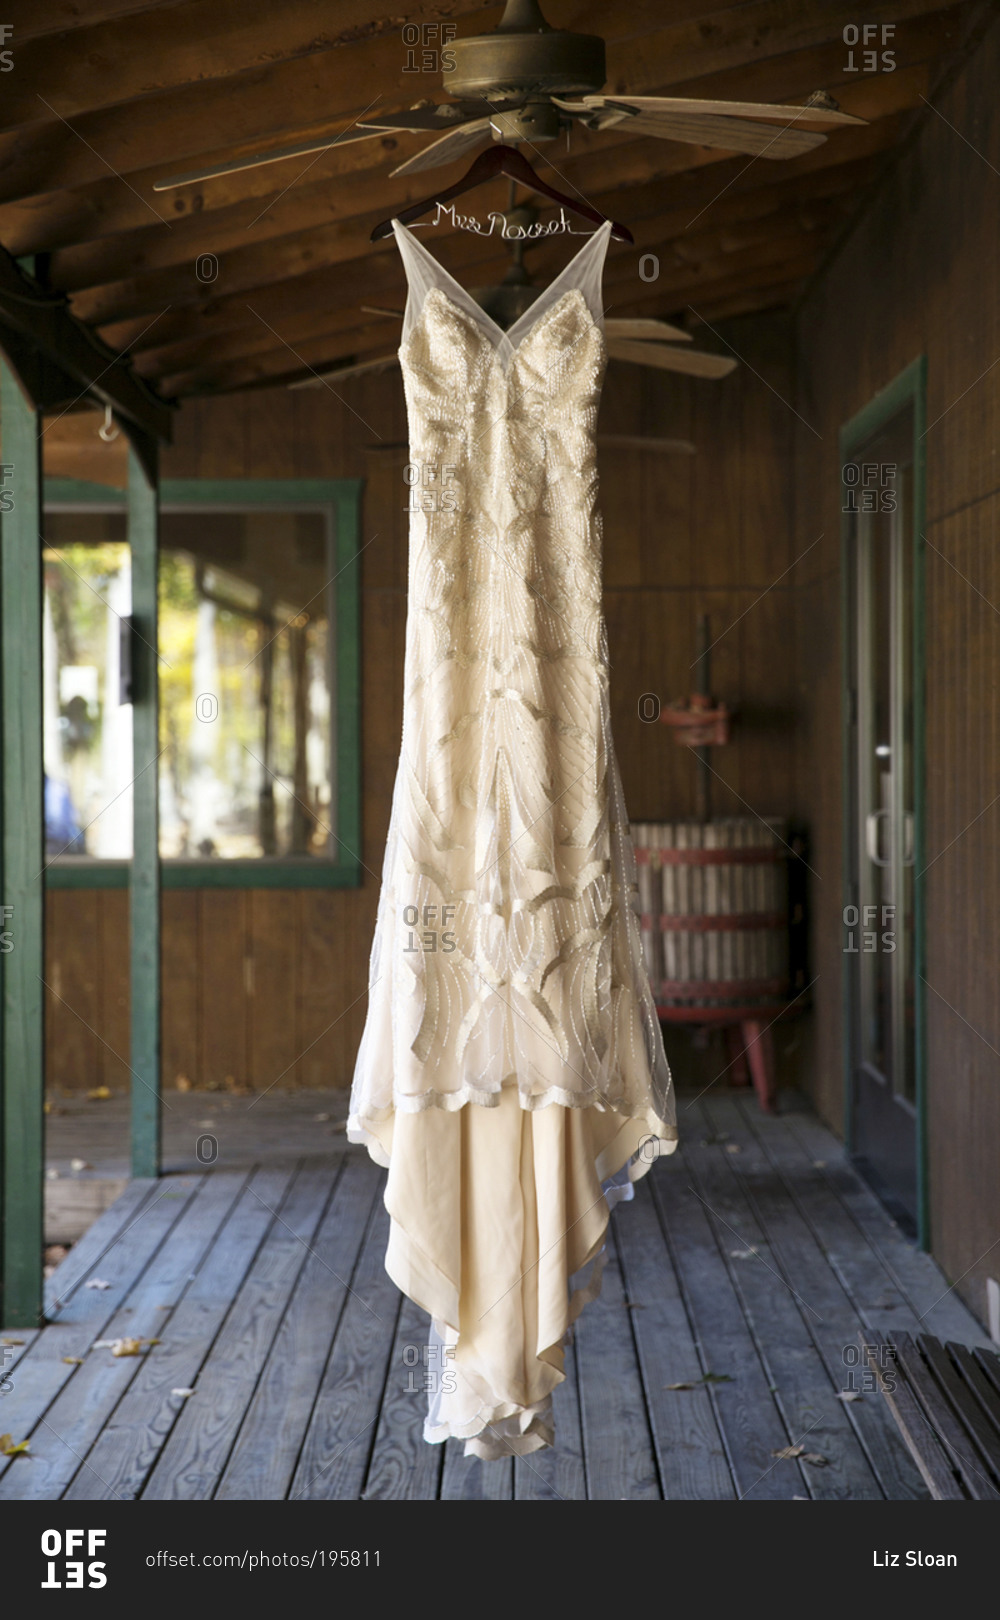 A bride's dress hangs from a ceiling fan